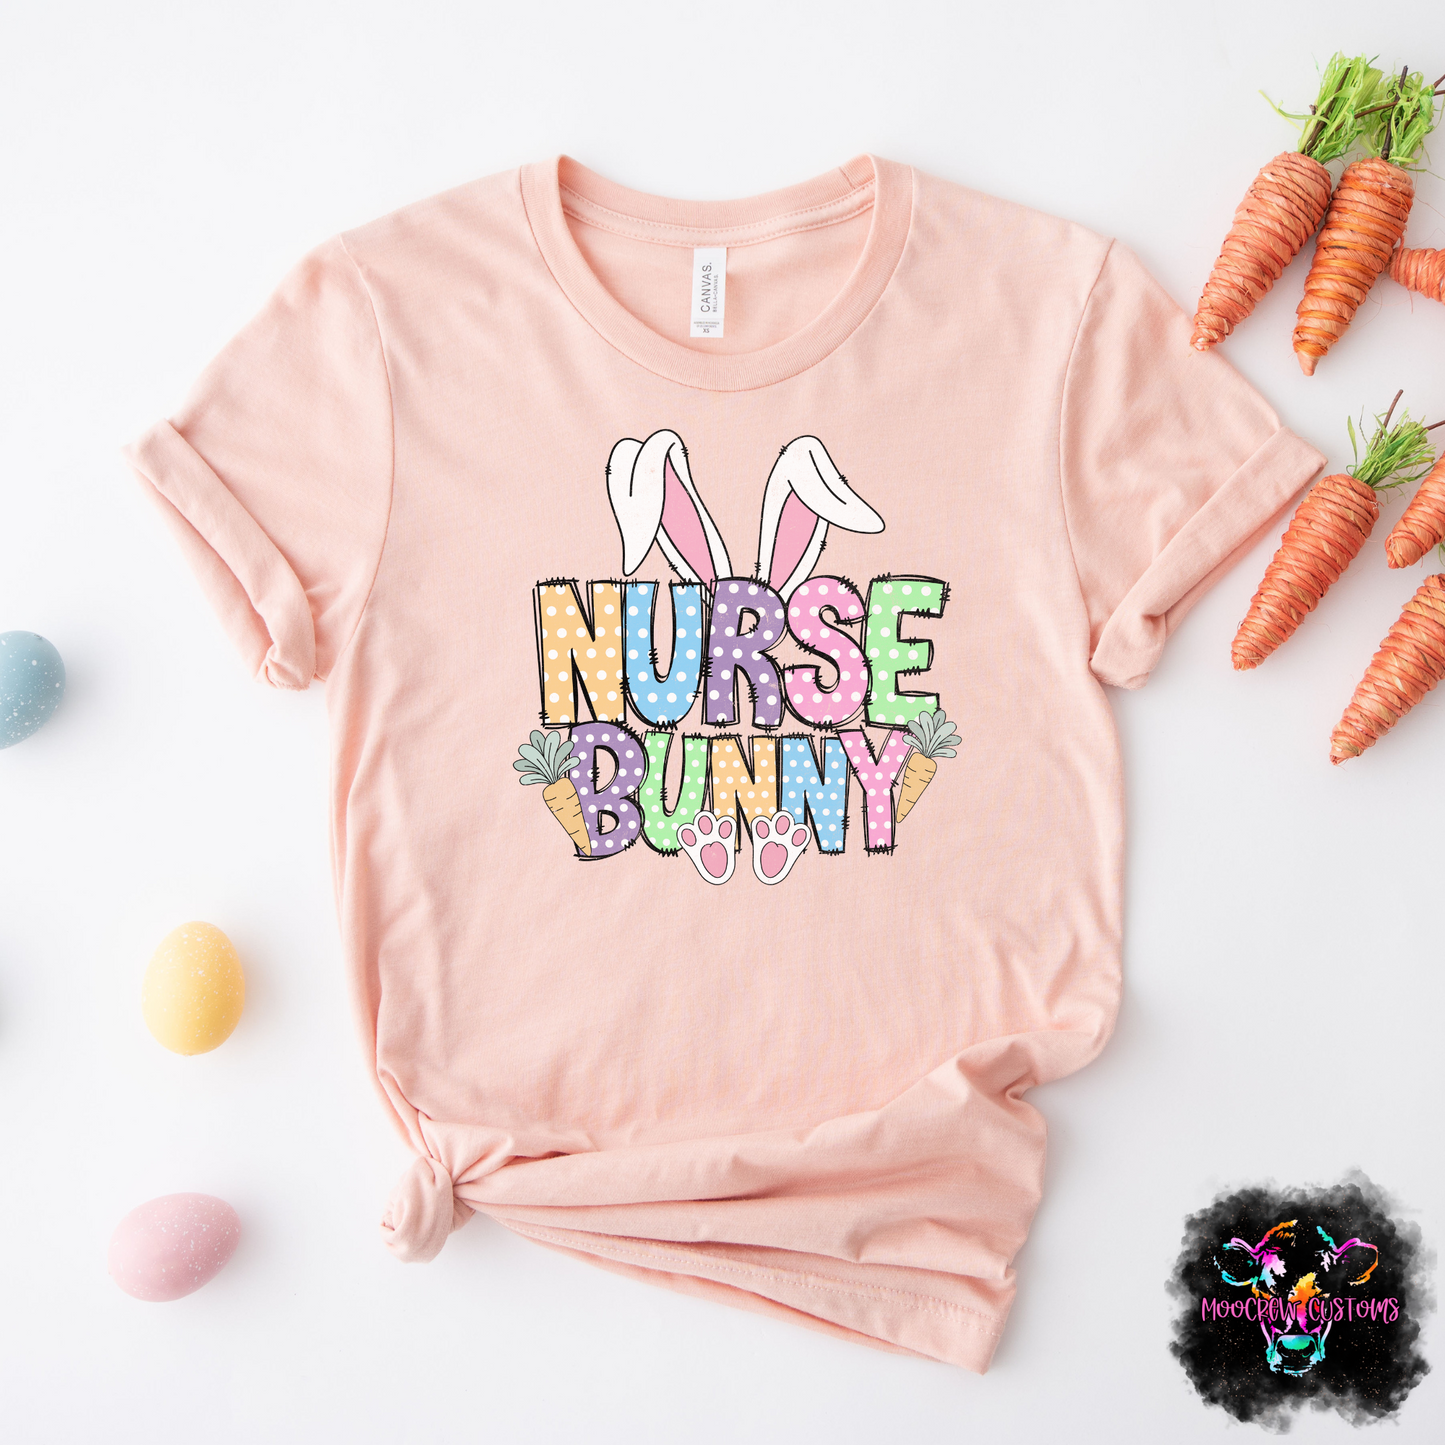 Nurse Bunny Doodle Tshirt